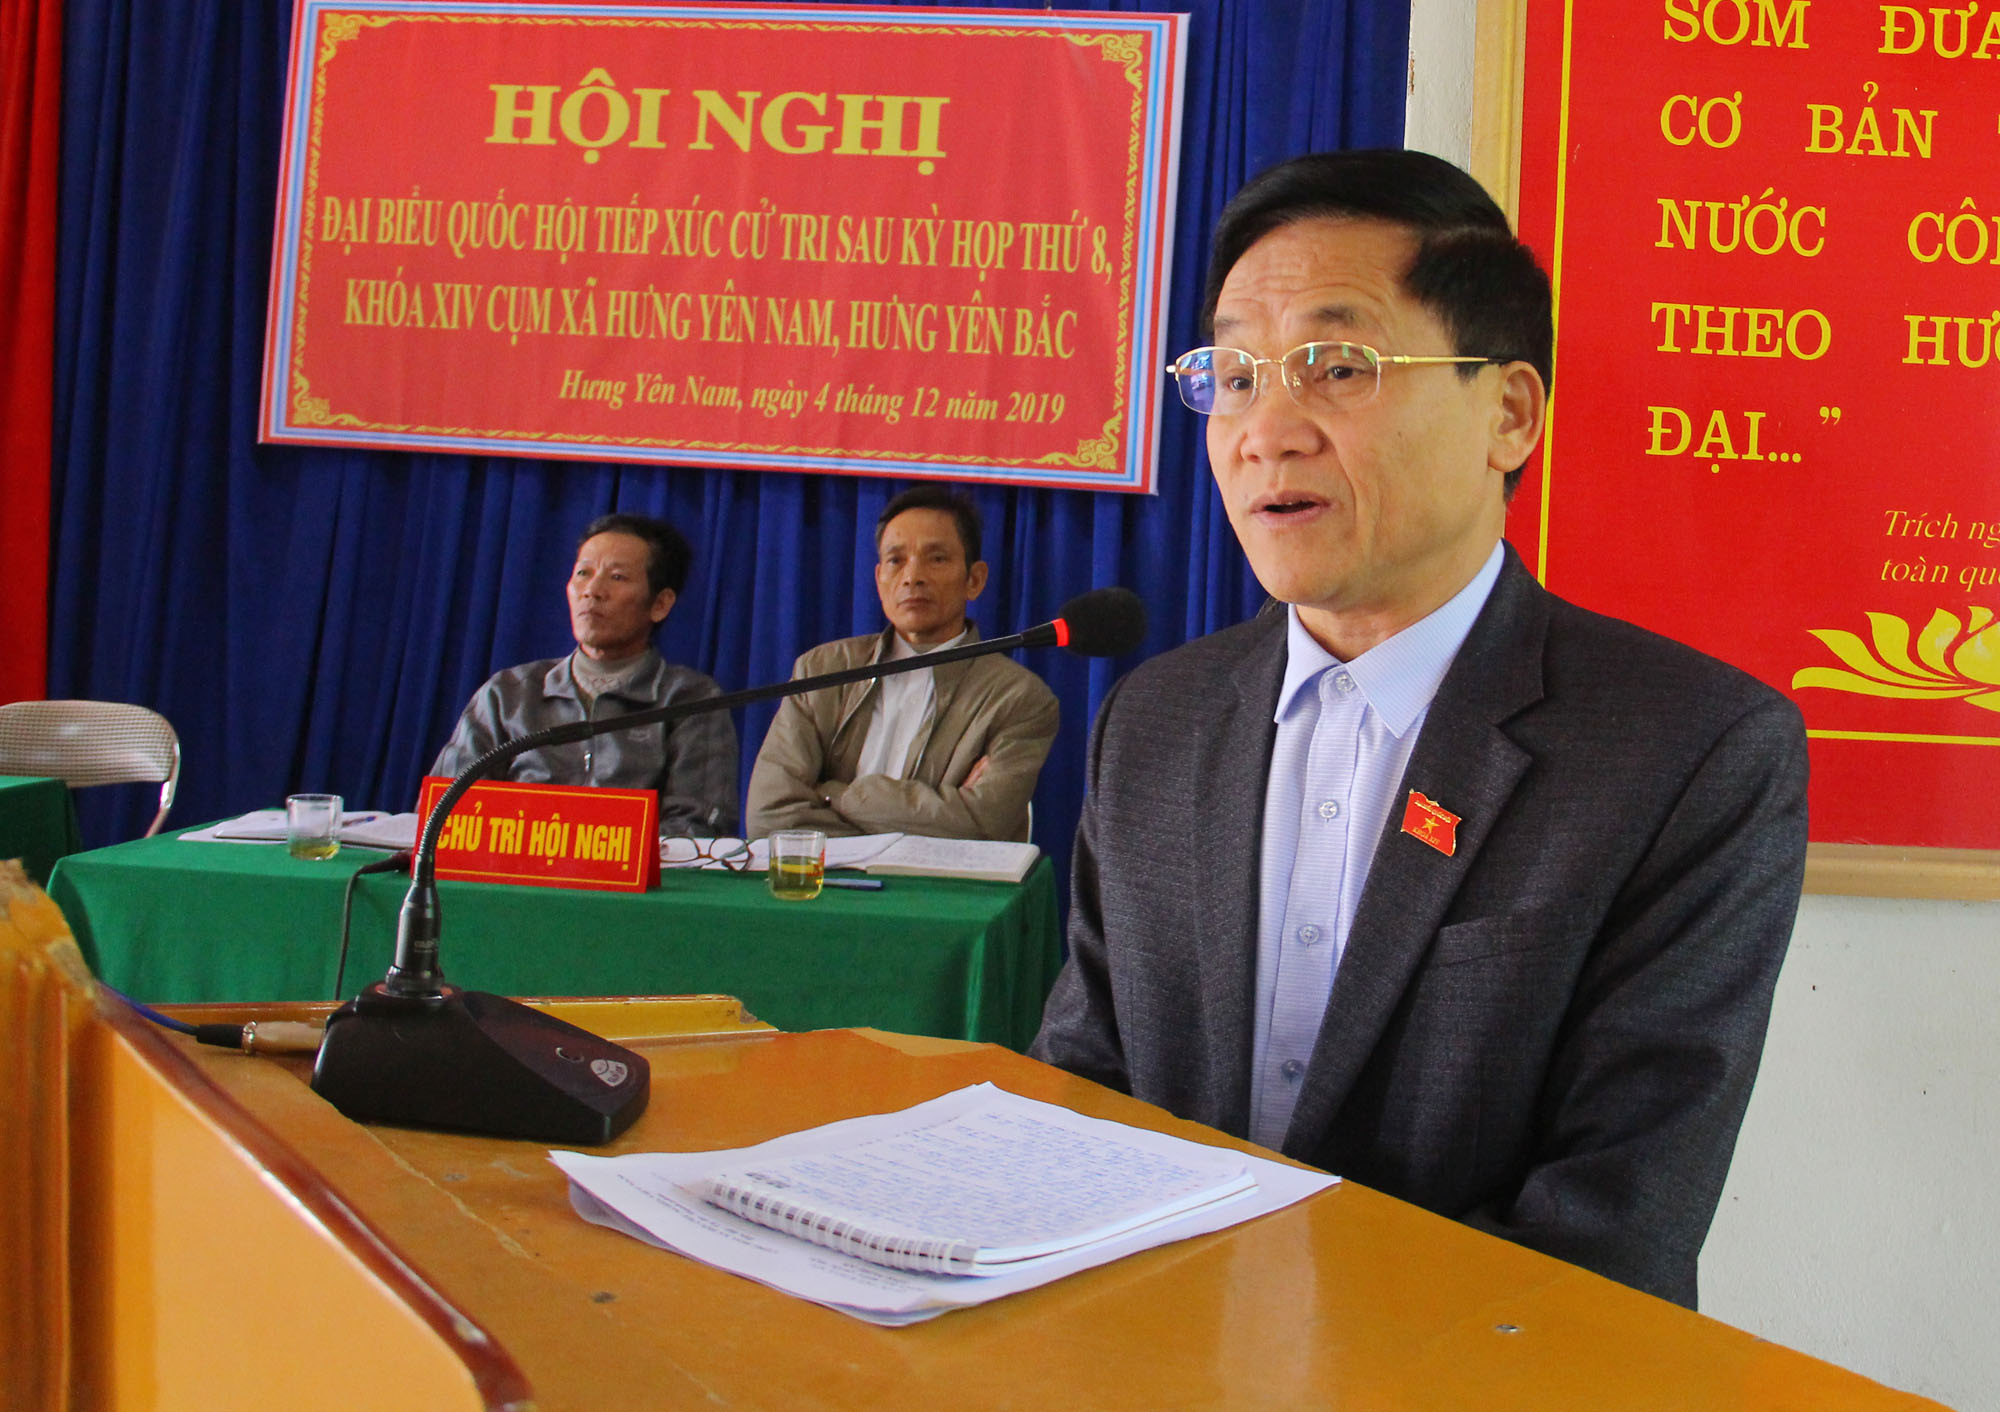 Phó trưởng Đoàn đại biểu Quốc hội tỉnh Trần Văn Mão trả lời kiến nghị của cư tri tại hội nghị. Ảnh: Thanh Quỳnh